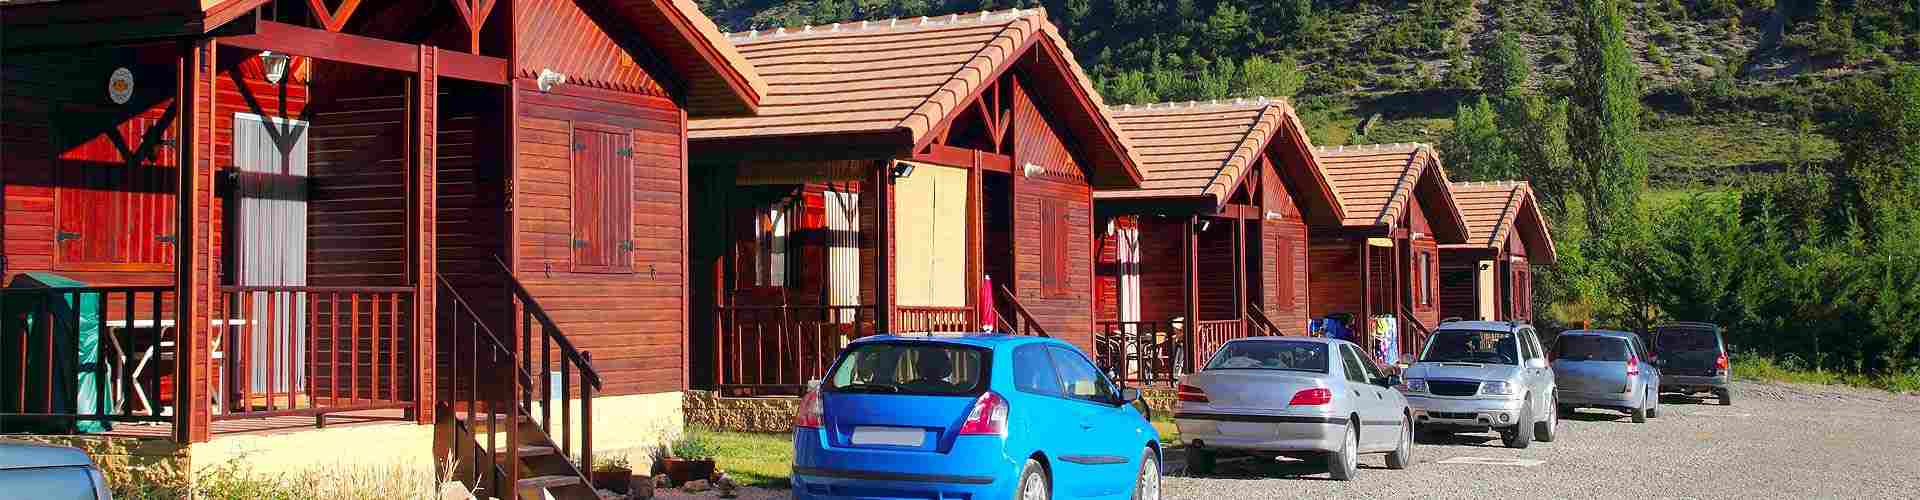 Campings y bungalows en Vidángoz
           
           


          
          
          


